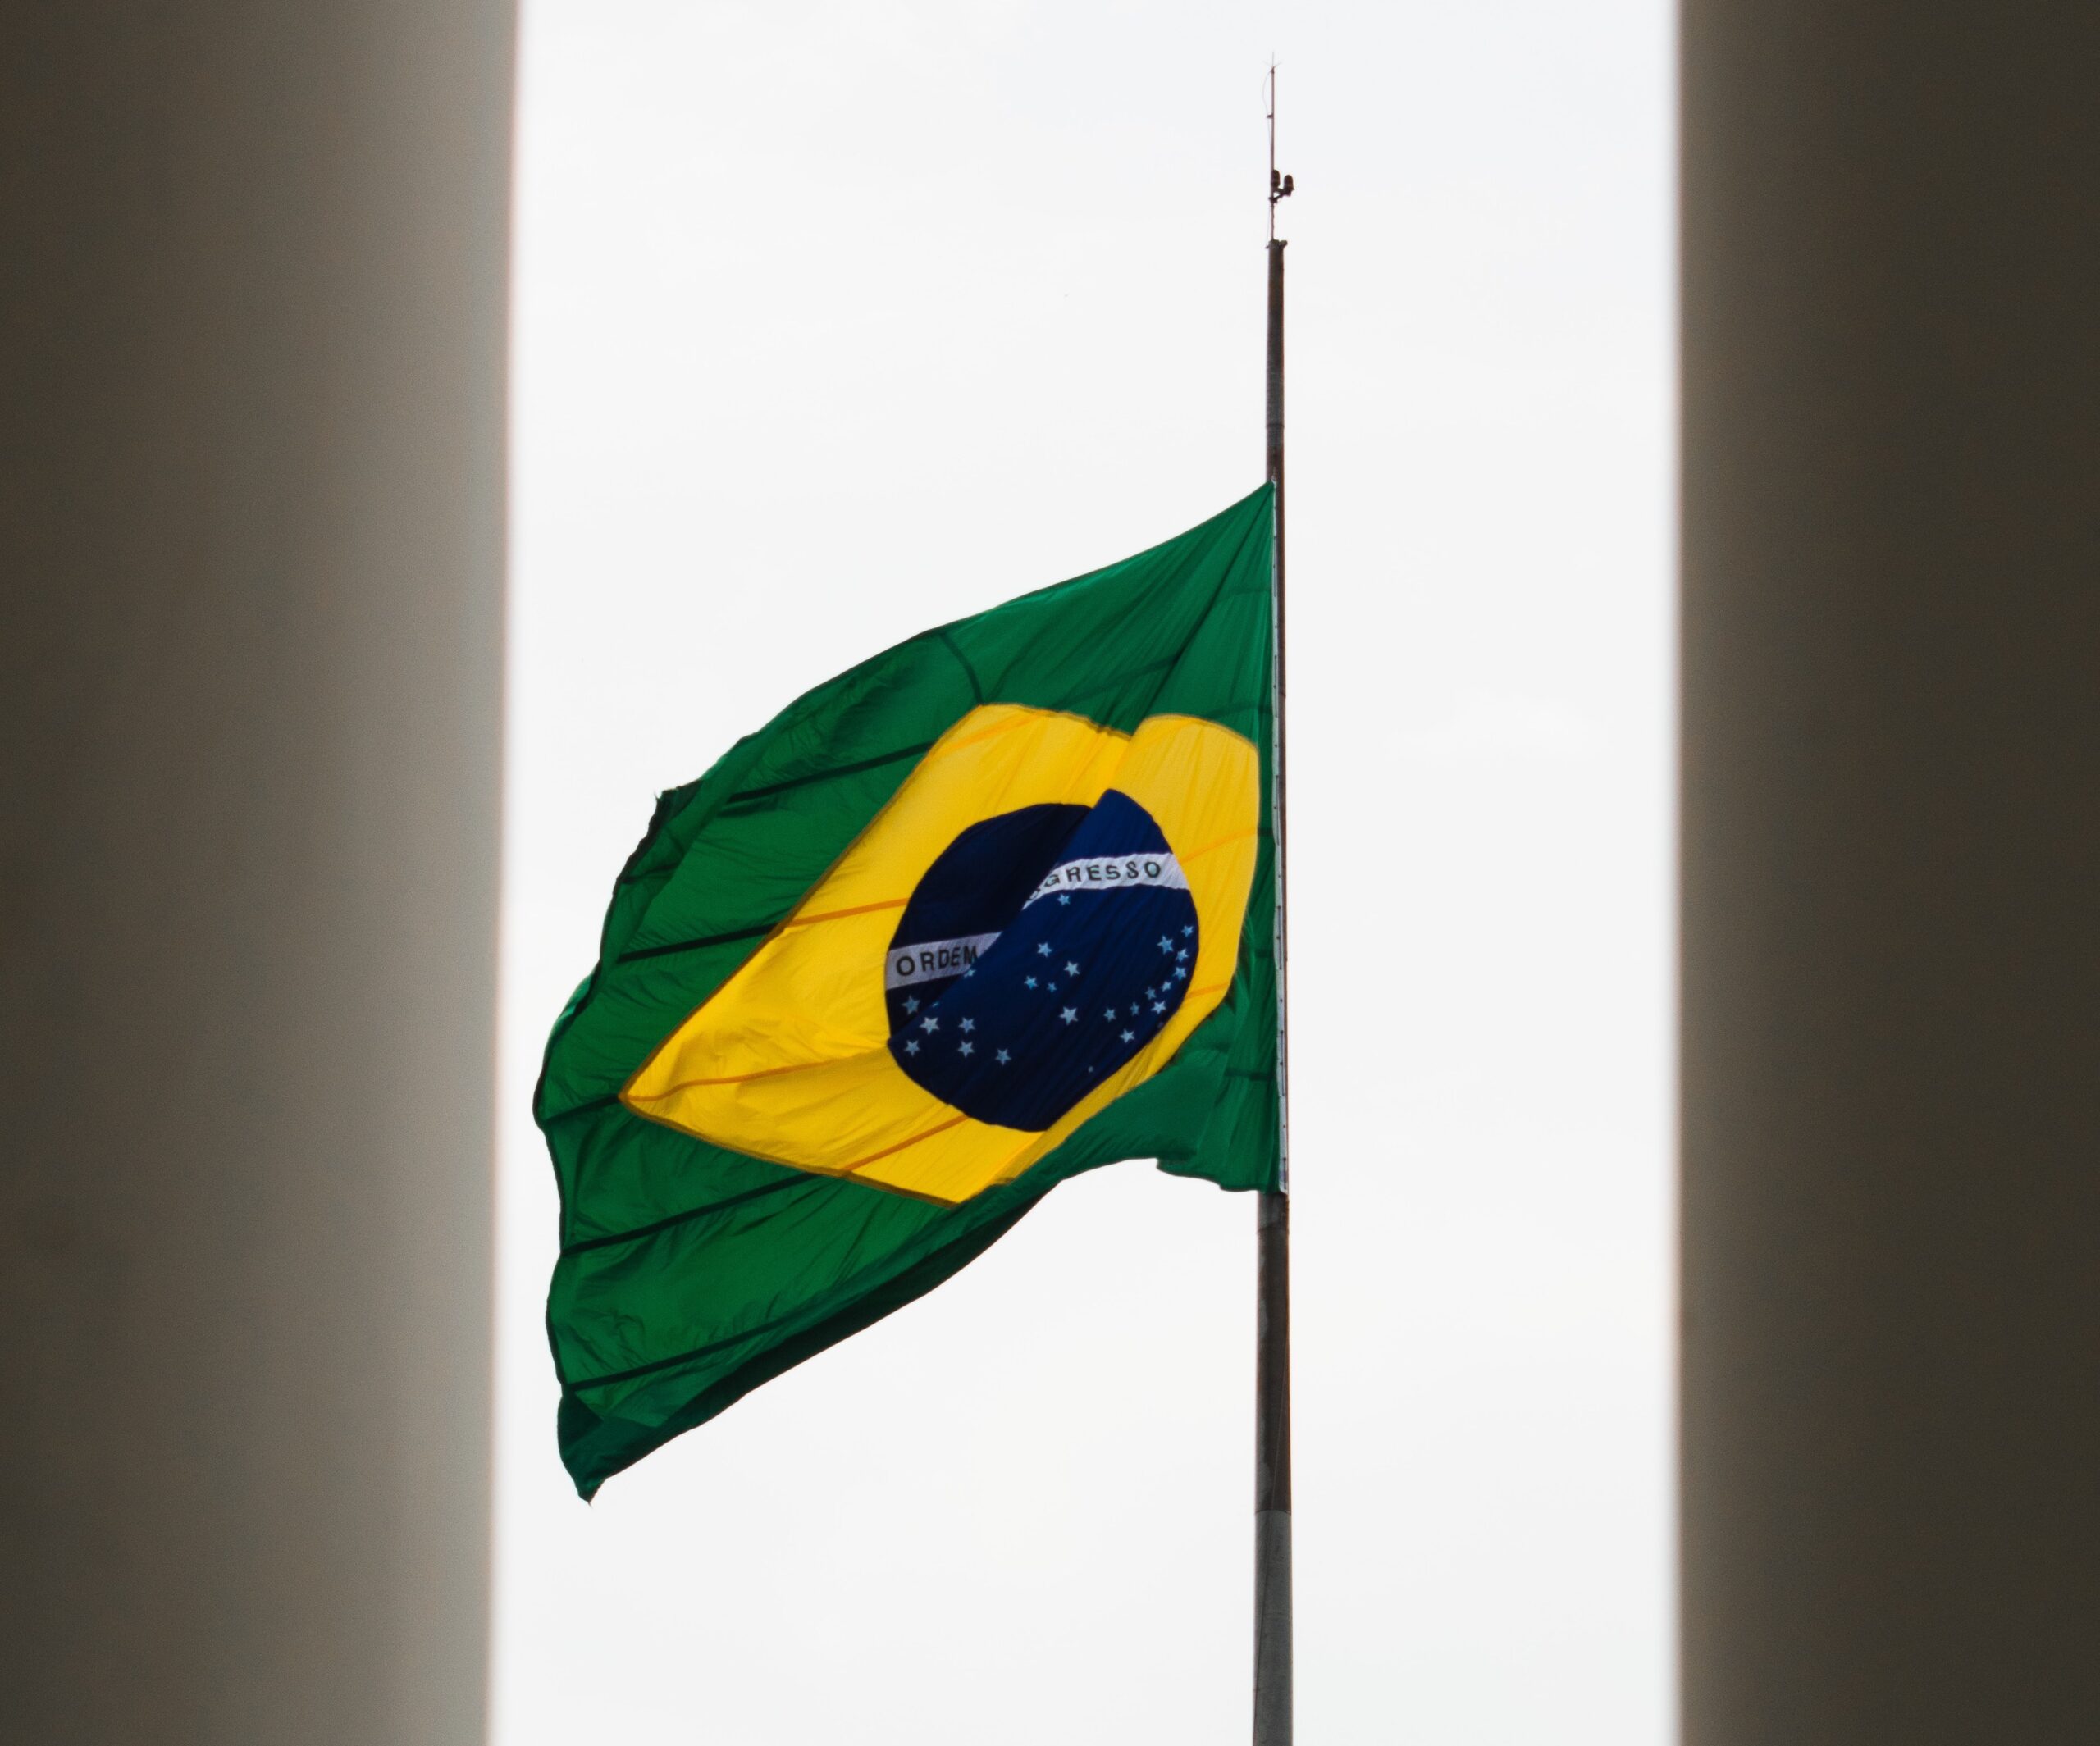 CDA256Y4GVGPXHTPAWJVPBIPNA scaled - بایننس برداشت ها و سپرده ها را در برزیل به حالت تعلیق درآورد